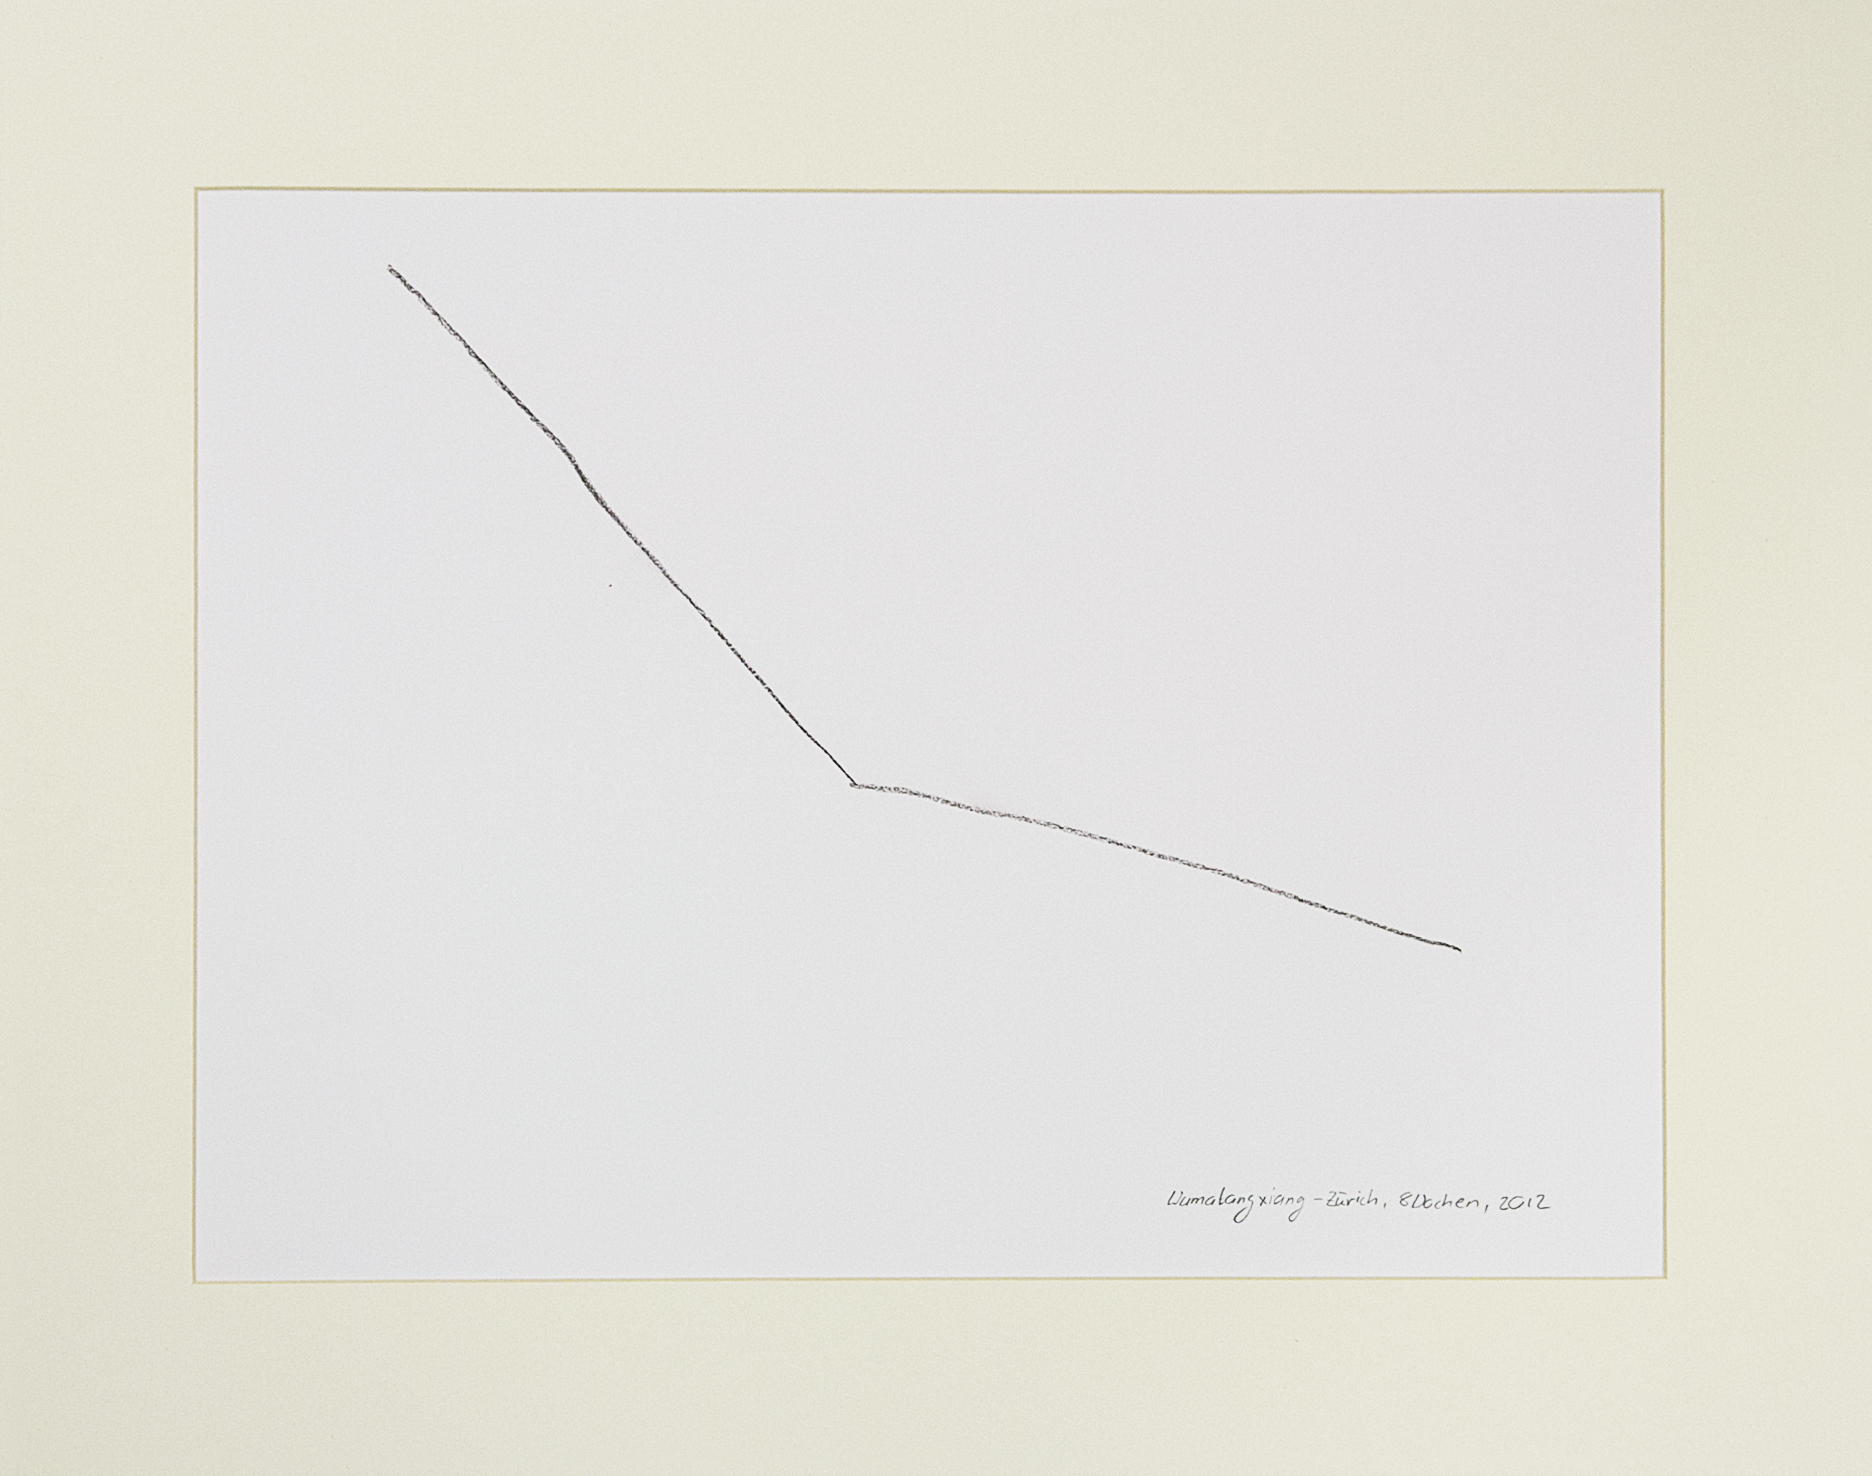 Desire Lines by Stefan Baltensperger + David Siepert